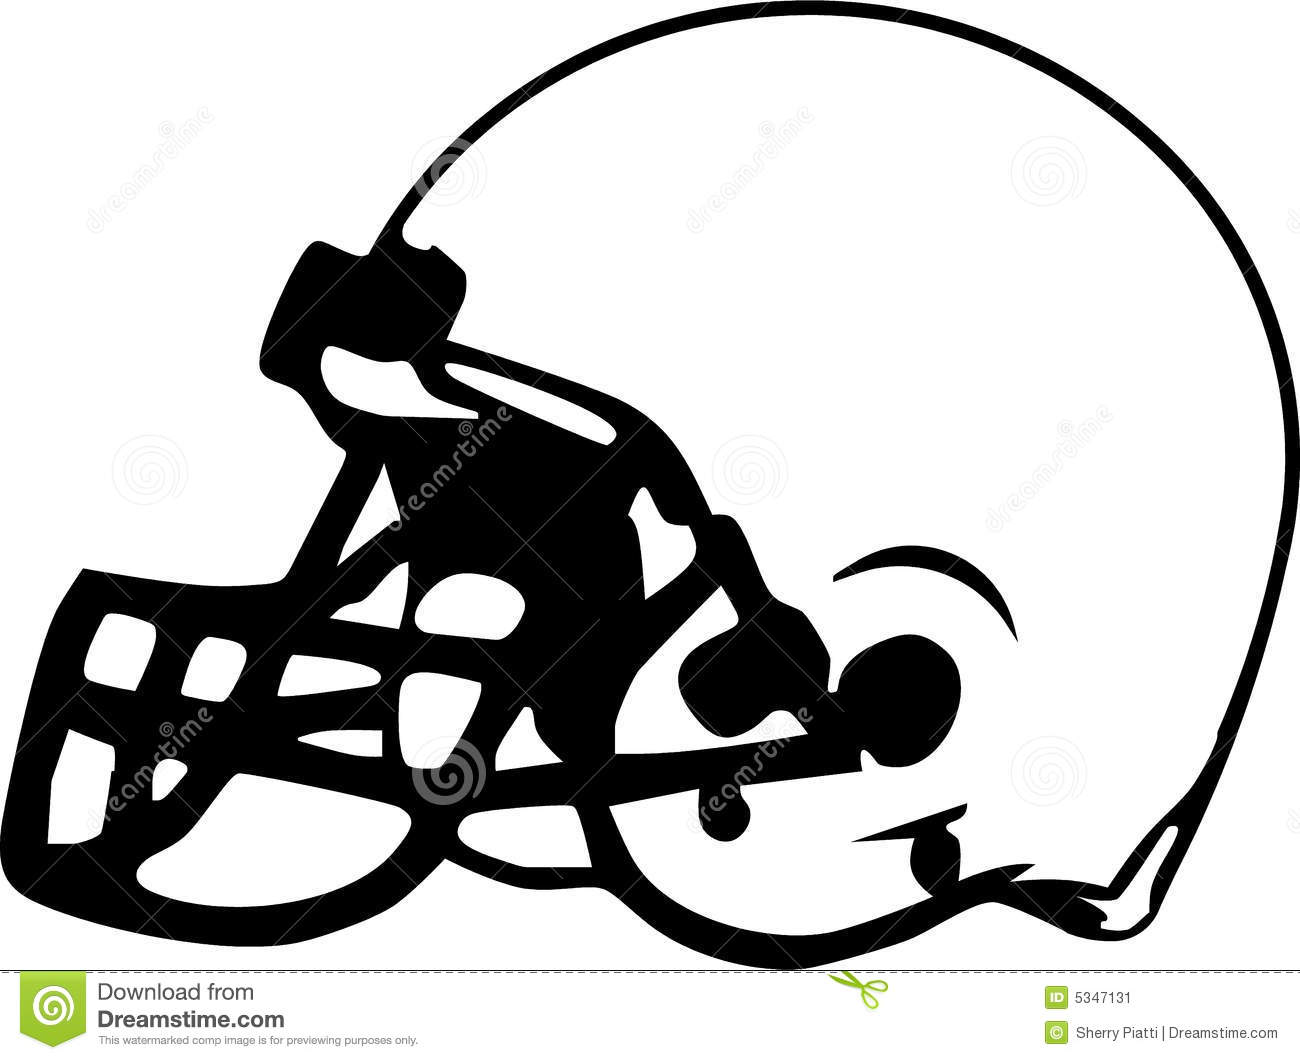 NFL Football Helmet Drawings